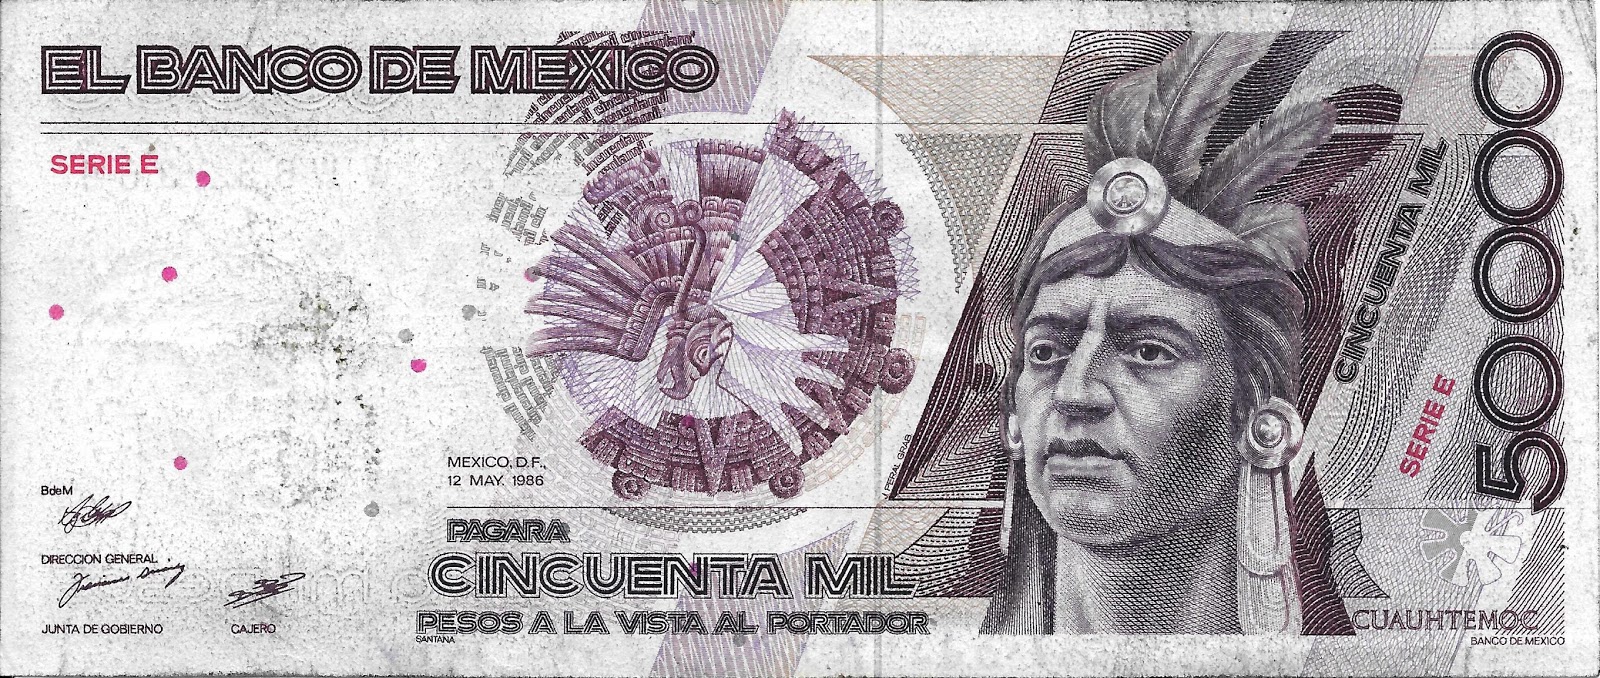 Mi Colección de Monedas y Billetes: Billete de 50,000 Pesos (1986) - México